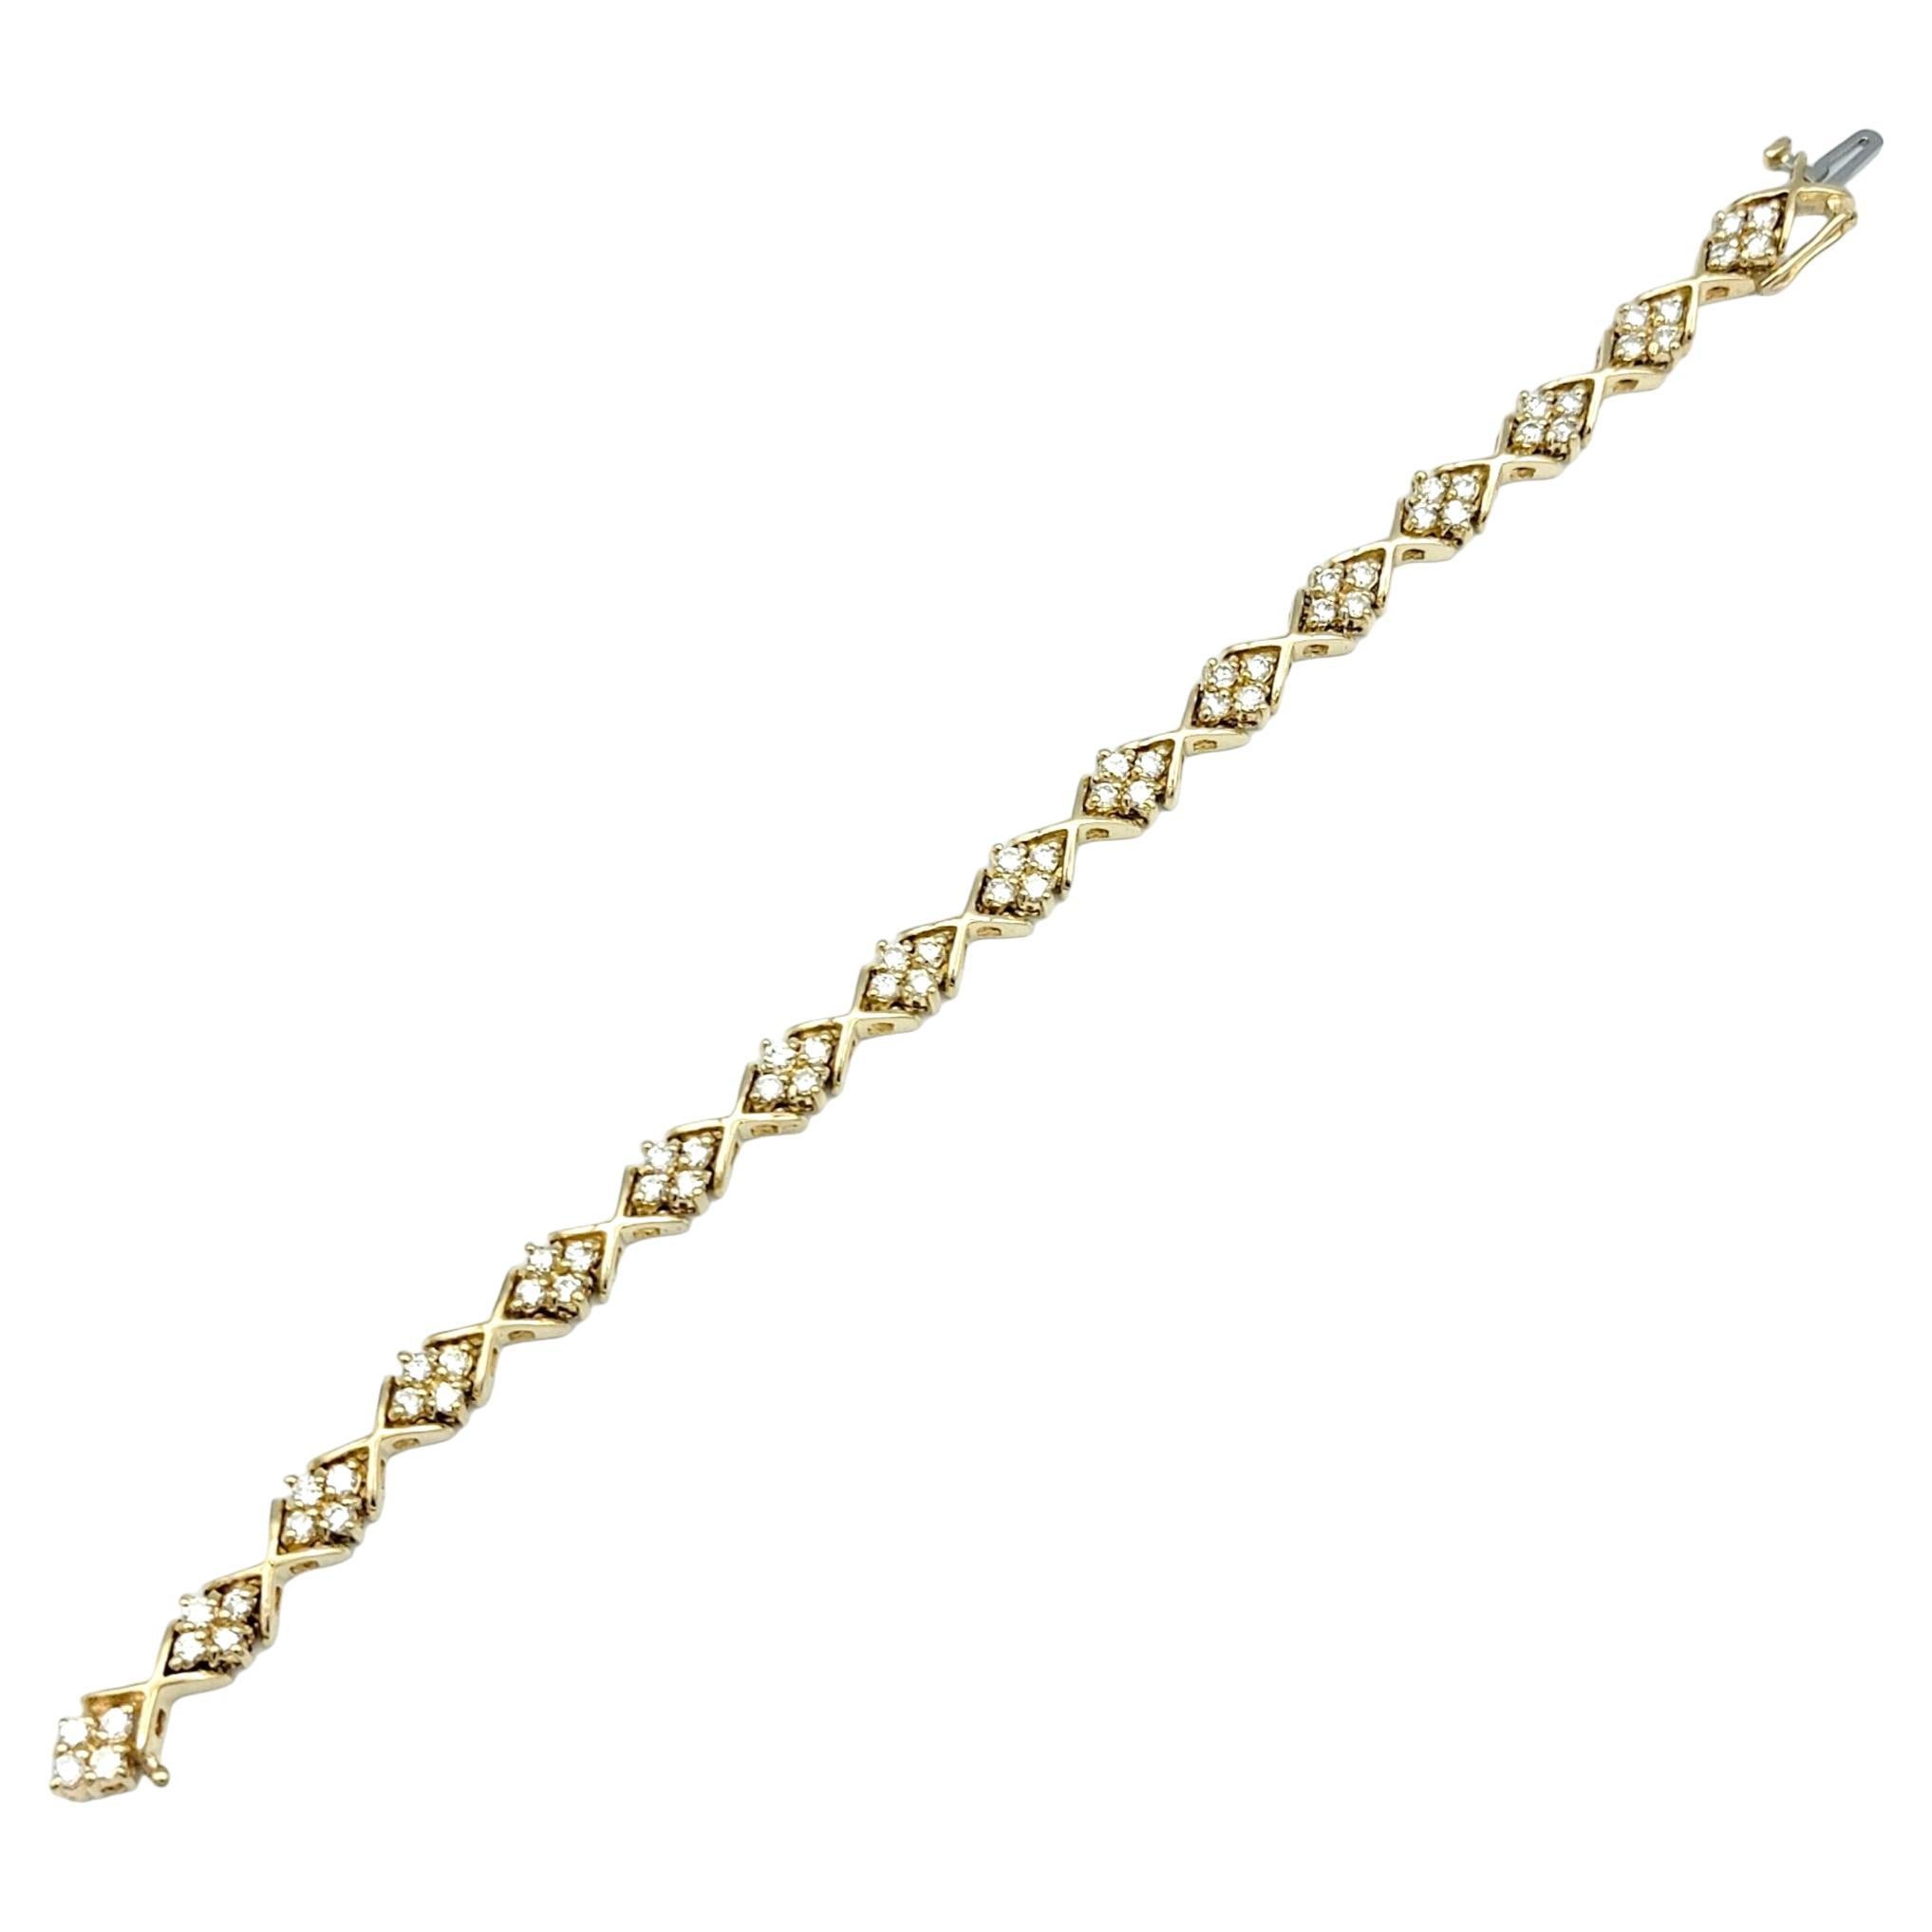 Ce magnifique bracelet à maillons en diamants, élégamment serti dans de l'or jaune 14 carats radieux, dégage un charme et une sophistication intemporels. Chaque maillon du bracelet est méticuleusement travaillé pour alterner entre deux motifs